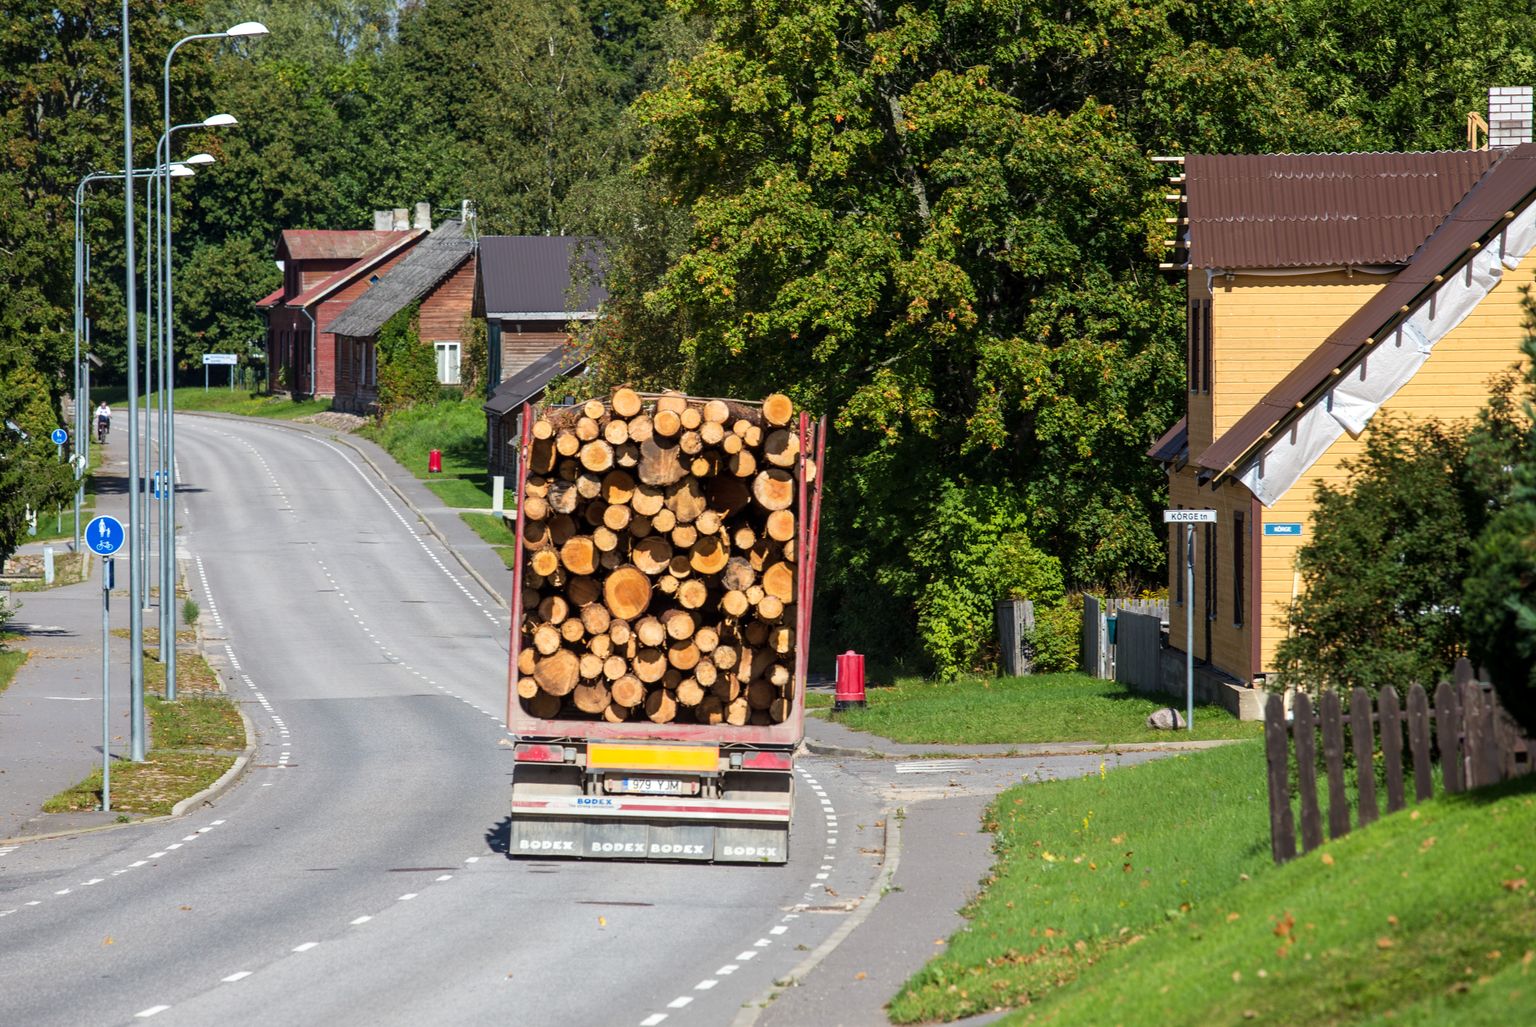 Praegu ekspordime puitu kui toormaterjali suures mahus Eestist välja, sellele olulist li­sandväärtust andmata.